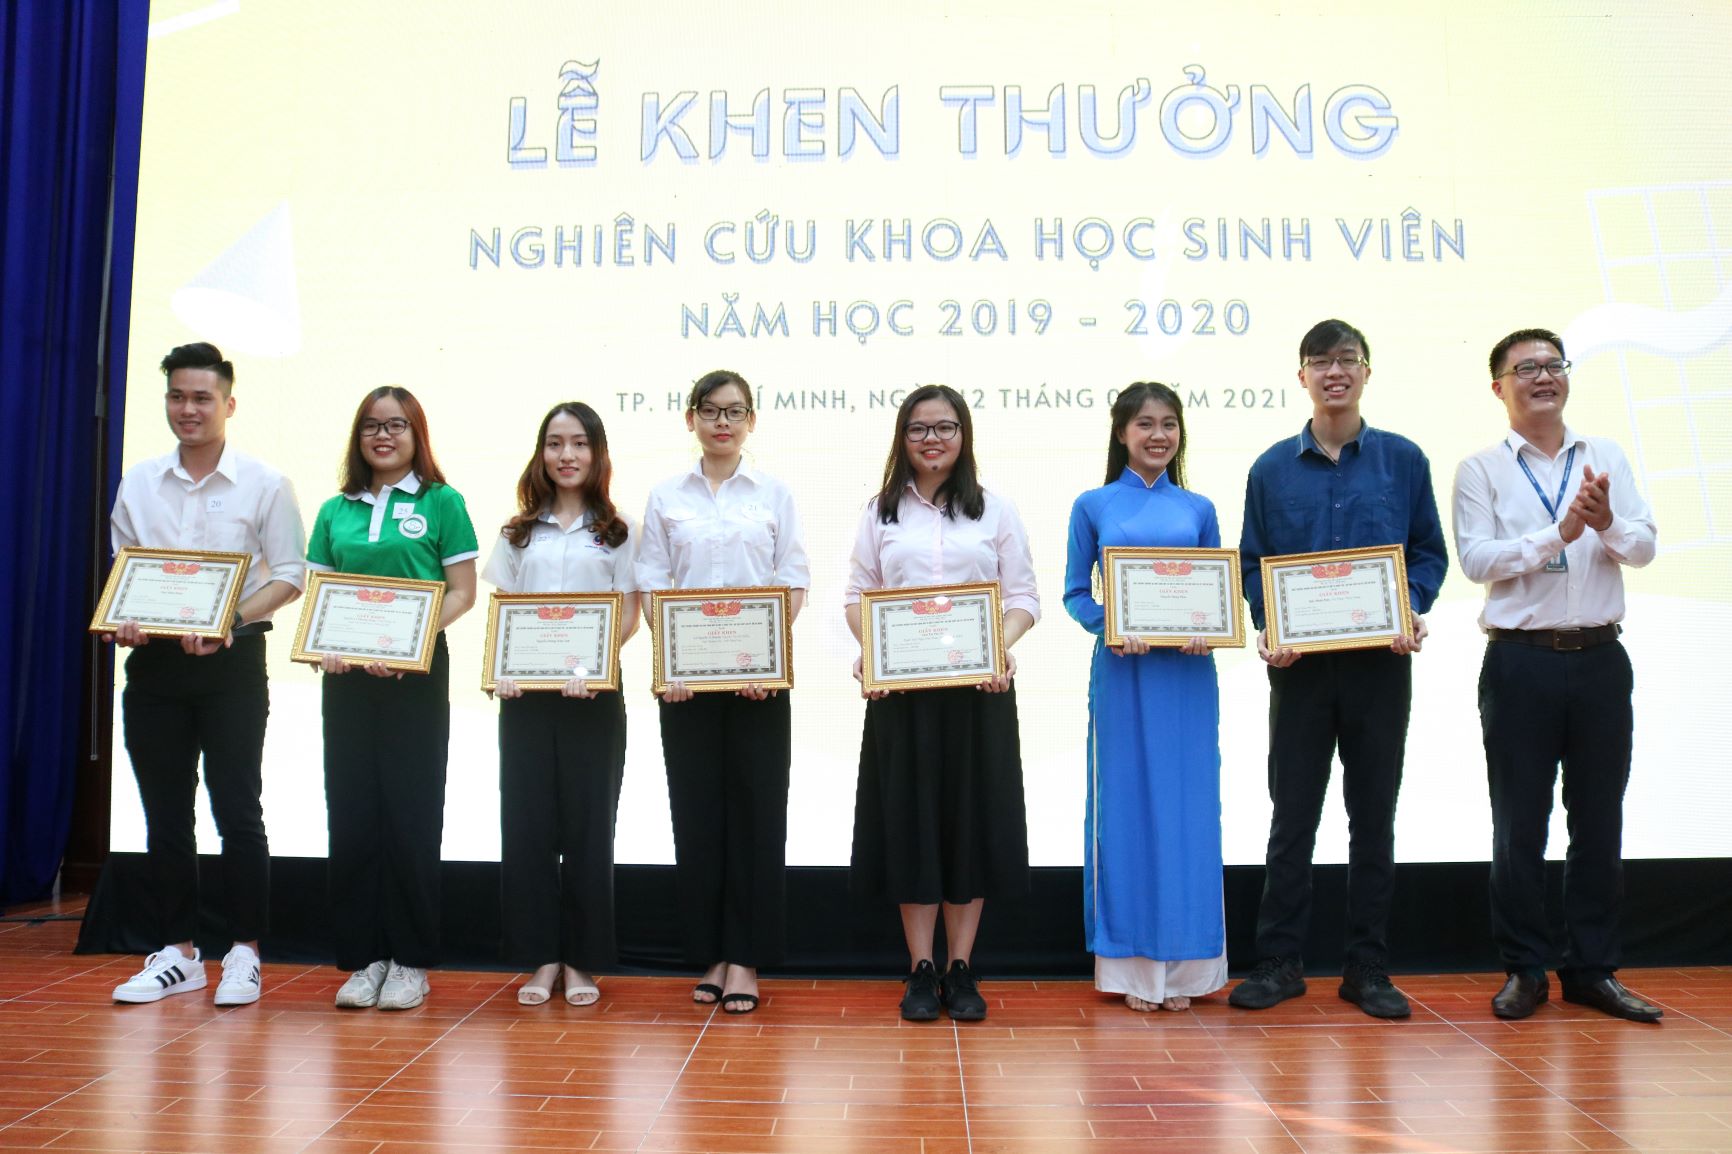 Trao giải thưởng nghiên cứu khoa học sinh viên năm học 2019 - 2020